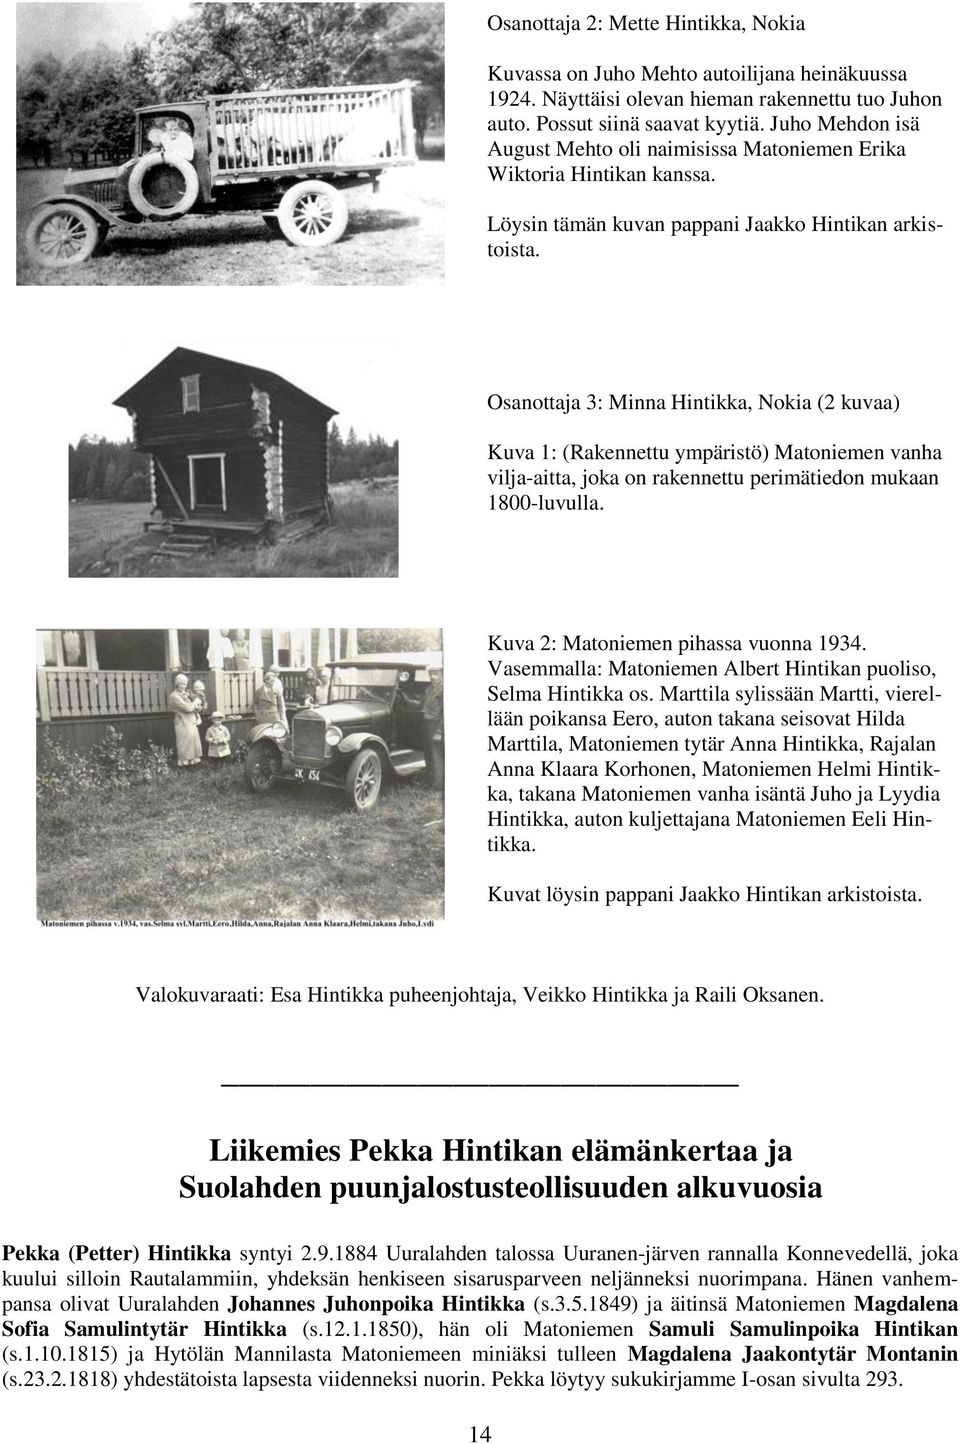 Osanottaja 3: Minna Hintikka, Nokia (2 kuvaa) Kuva 1: (Rakennettu ympäristö) Matoniemen vanha vilja-aitta, joka on rakennettu perimätiedon mukaan 1800-luvulla. Kuva 2: Matoniemen pihassa vuonna 1934.